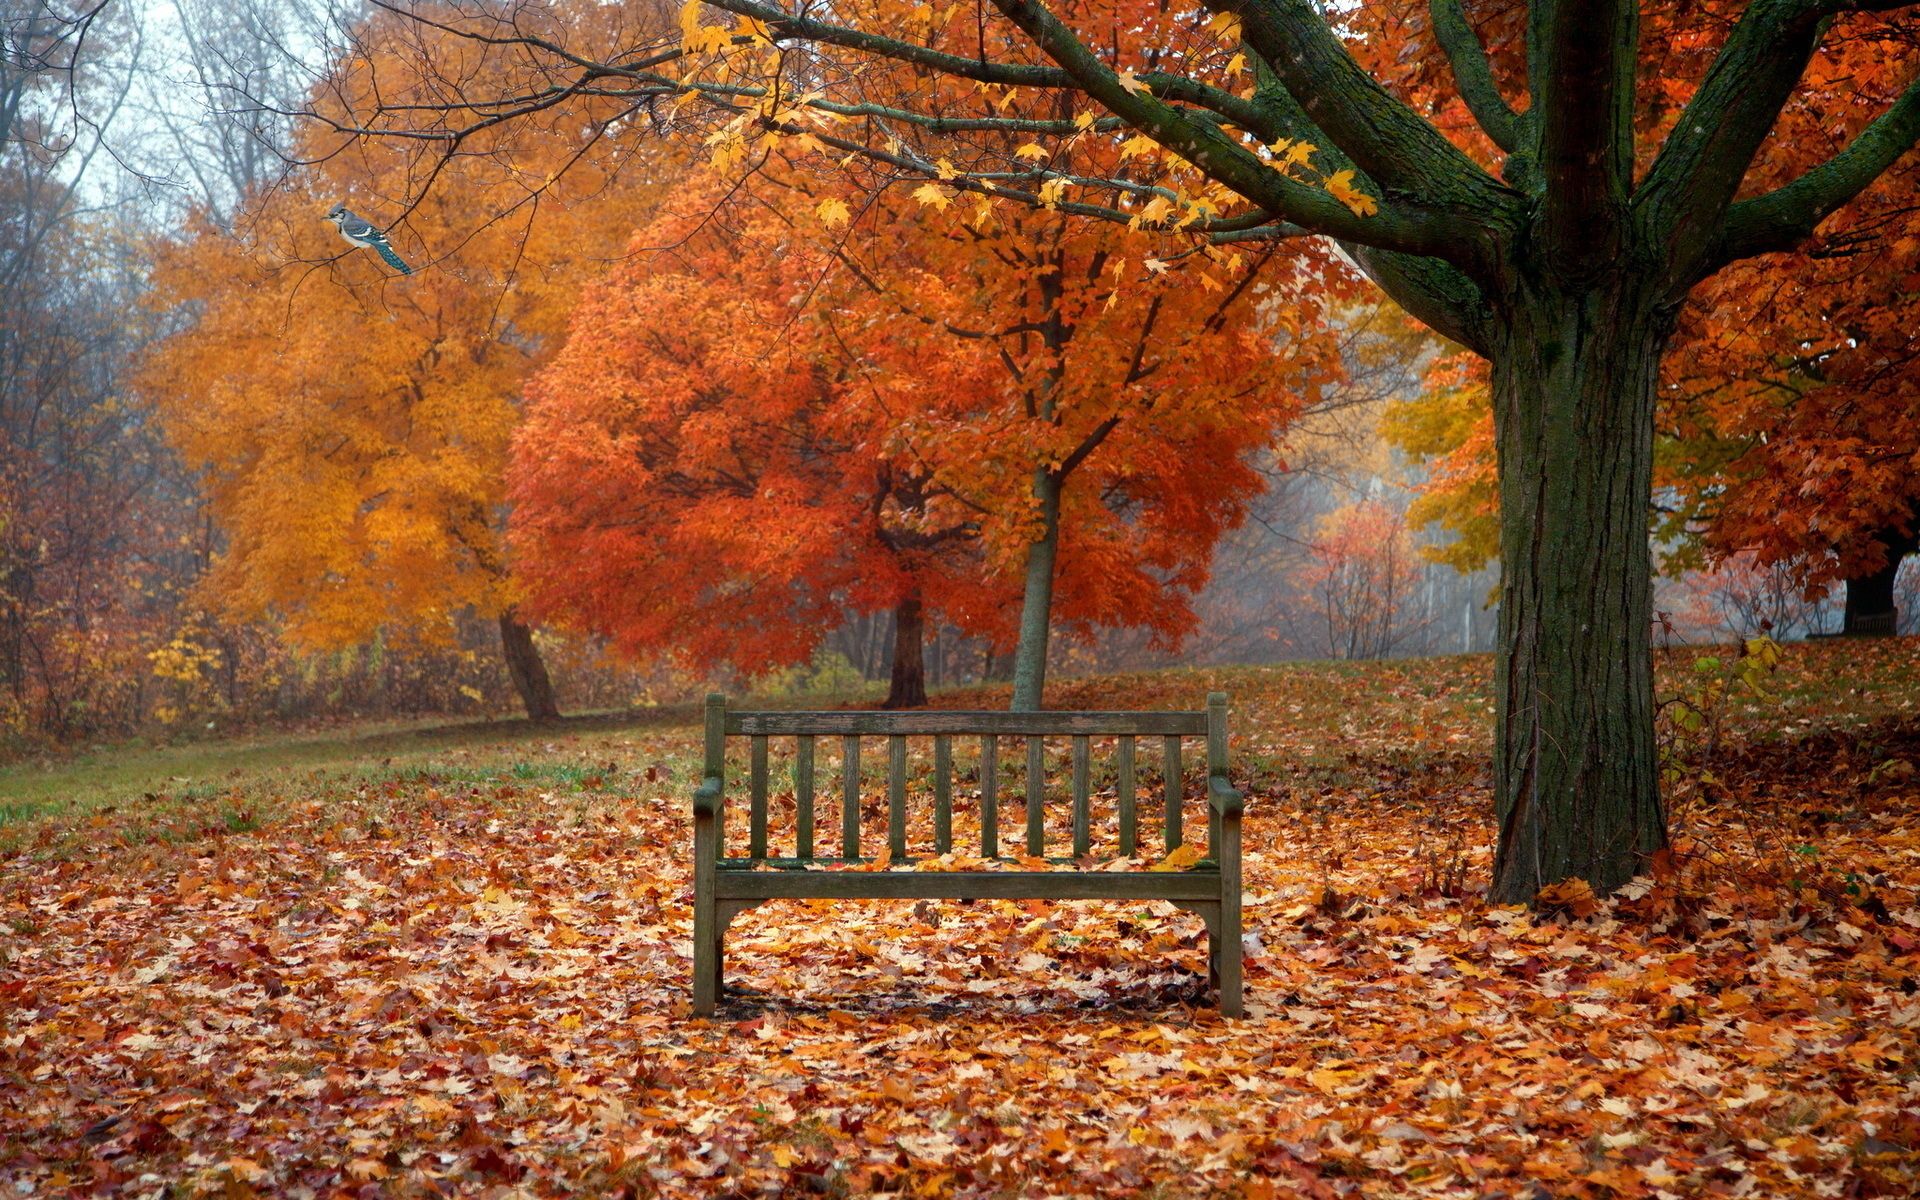 scenes of autumn